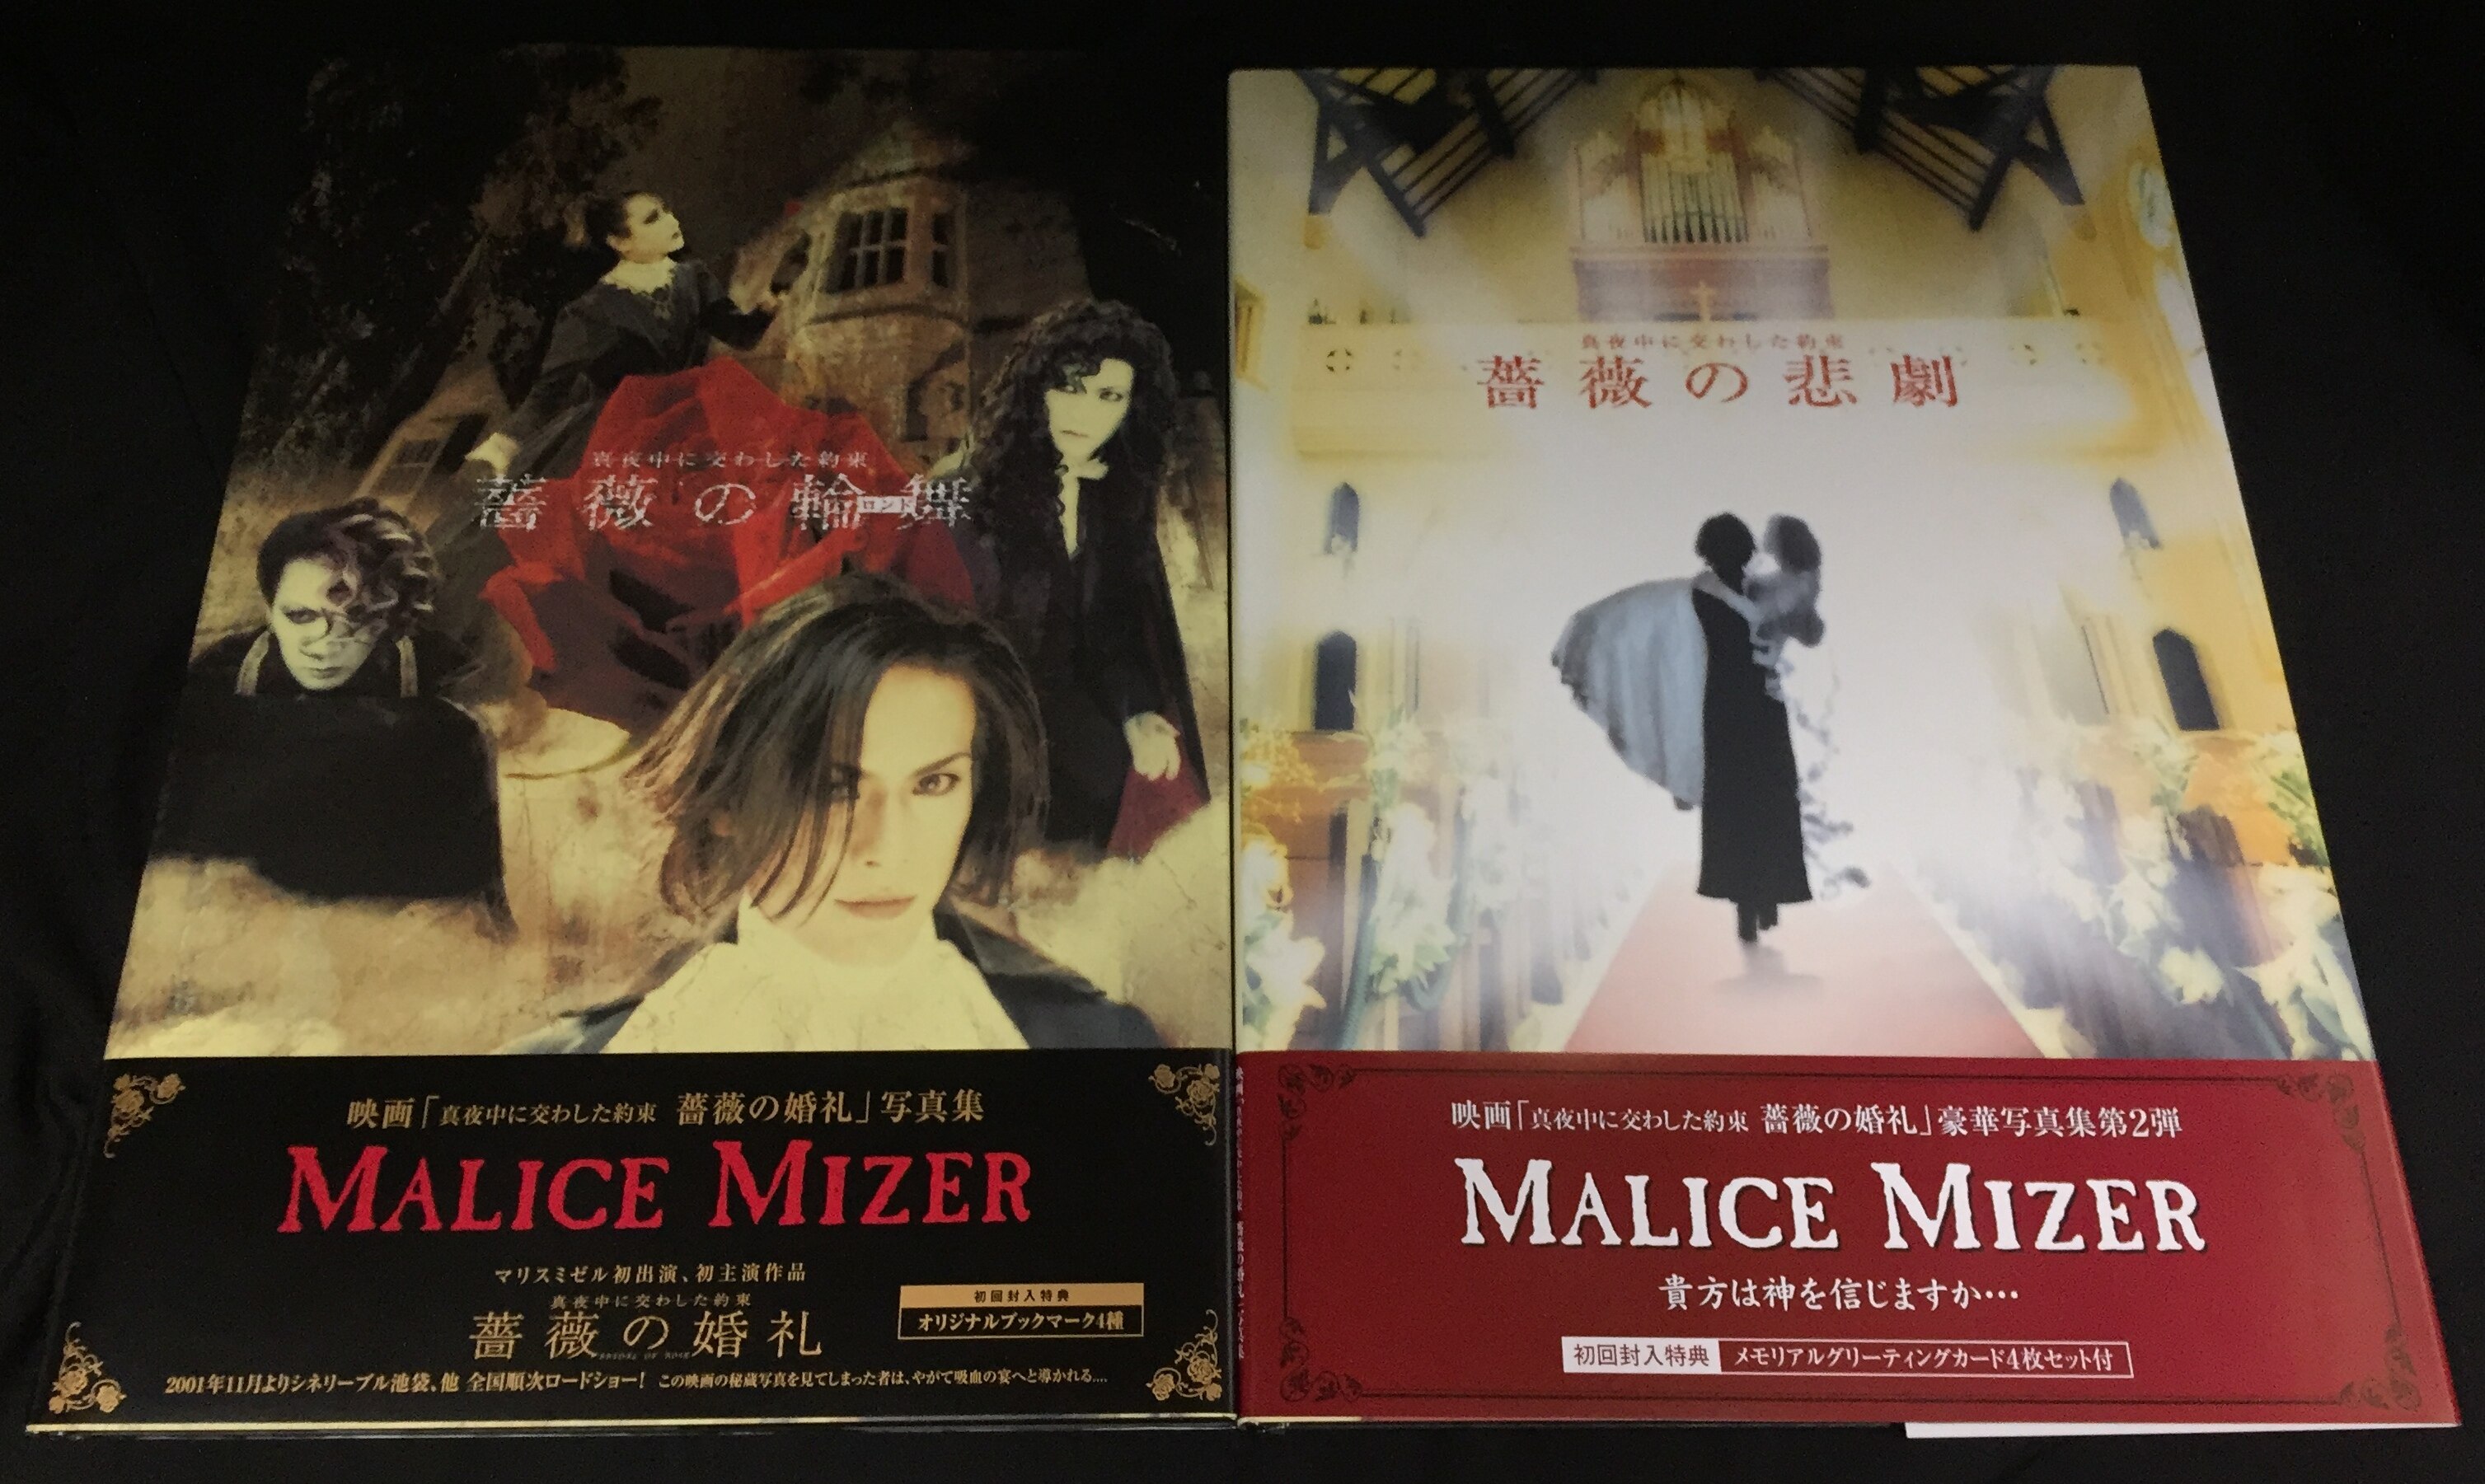 MALICE MIZER 薔薇の聖堂 ポスター  V系 ヴィジュアル系マリスミゼルグッズ